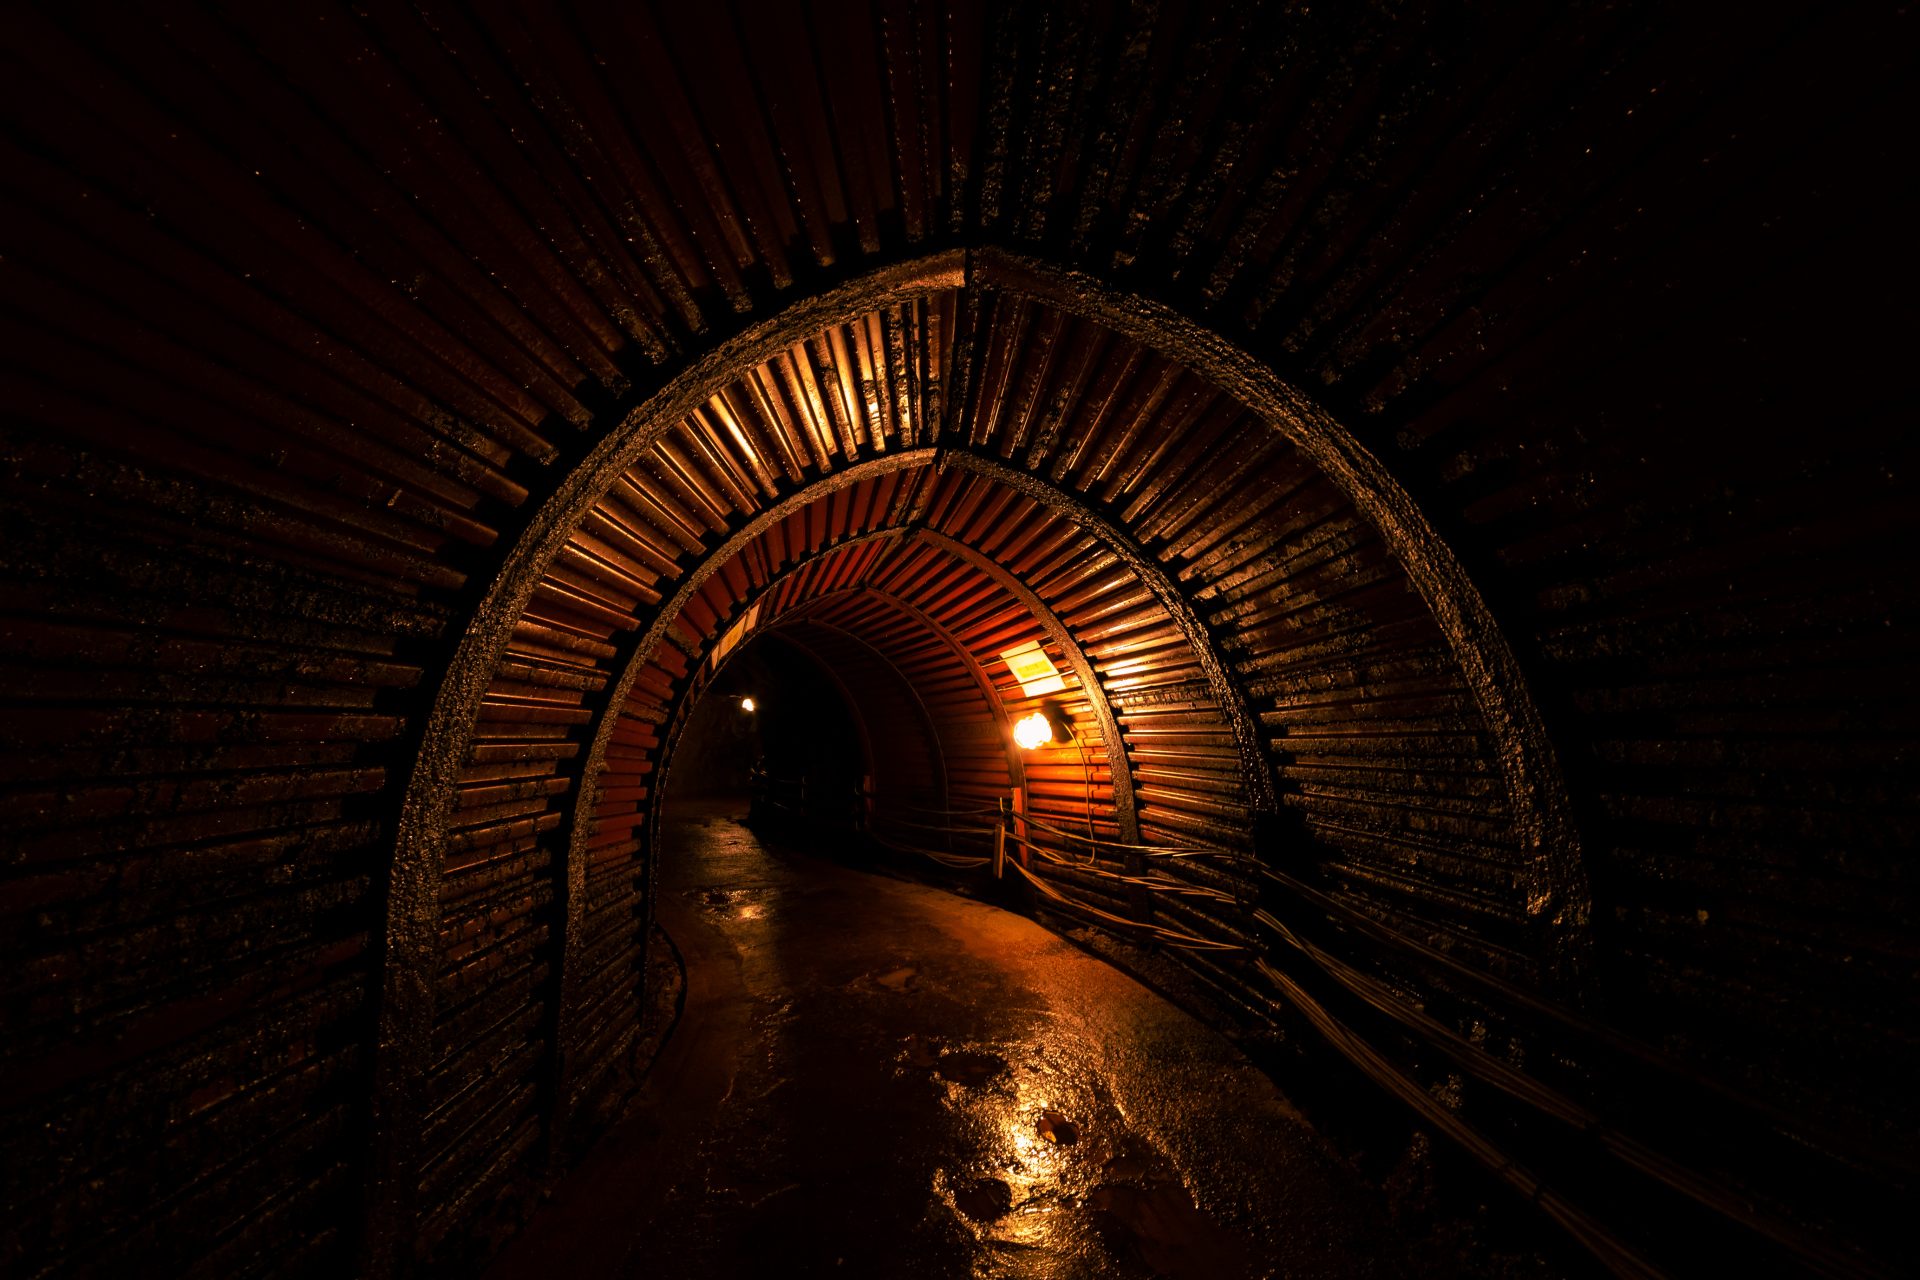 Le tunnel sombre est à 13°C (55°F) toute l'année, frais en été et plutôt chaud en hiver.